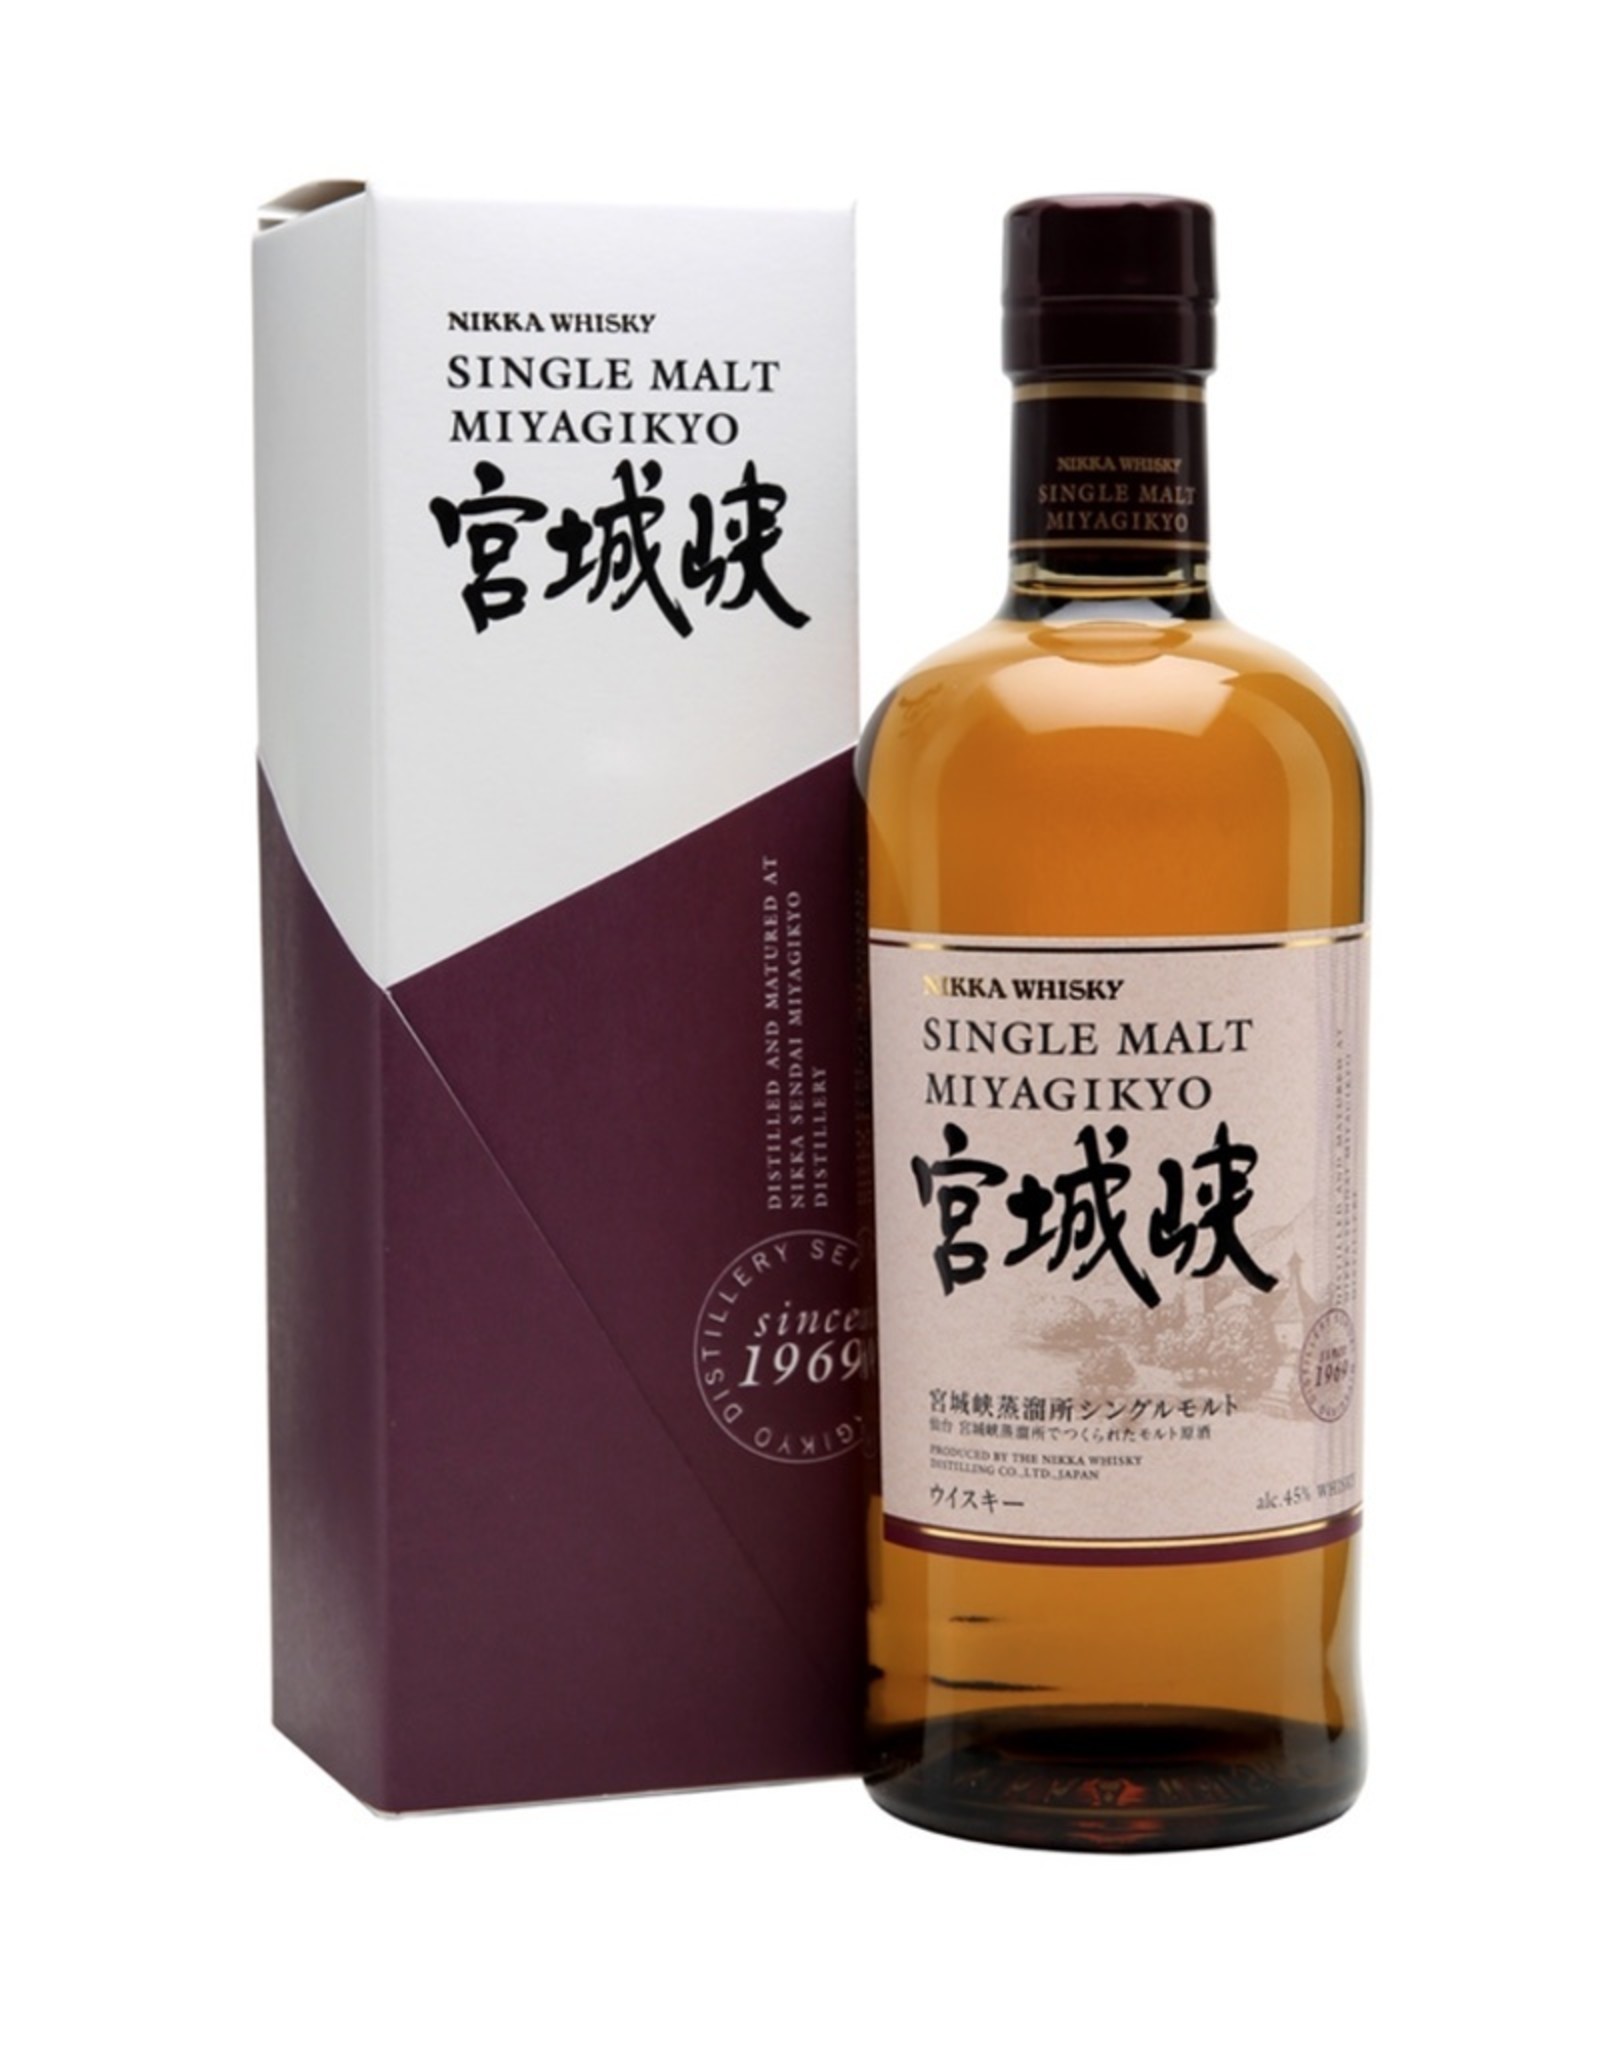 Nikka Nikka 'Miyagikyo' Single Malt Japanese Whisky, Japan